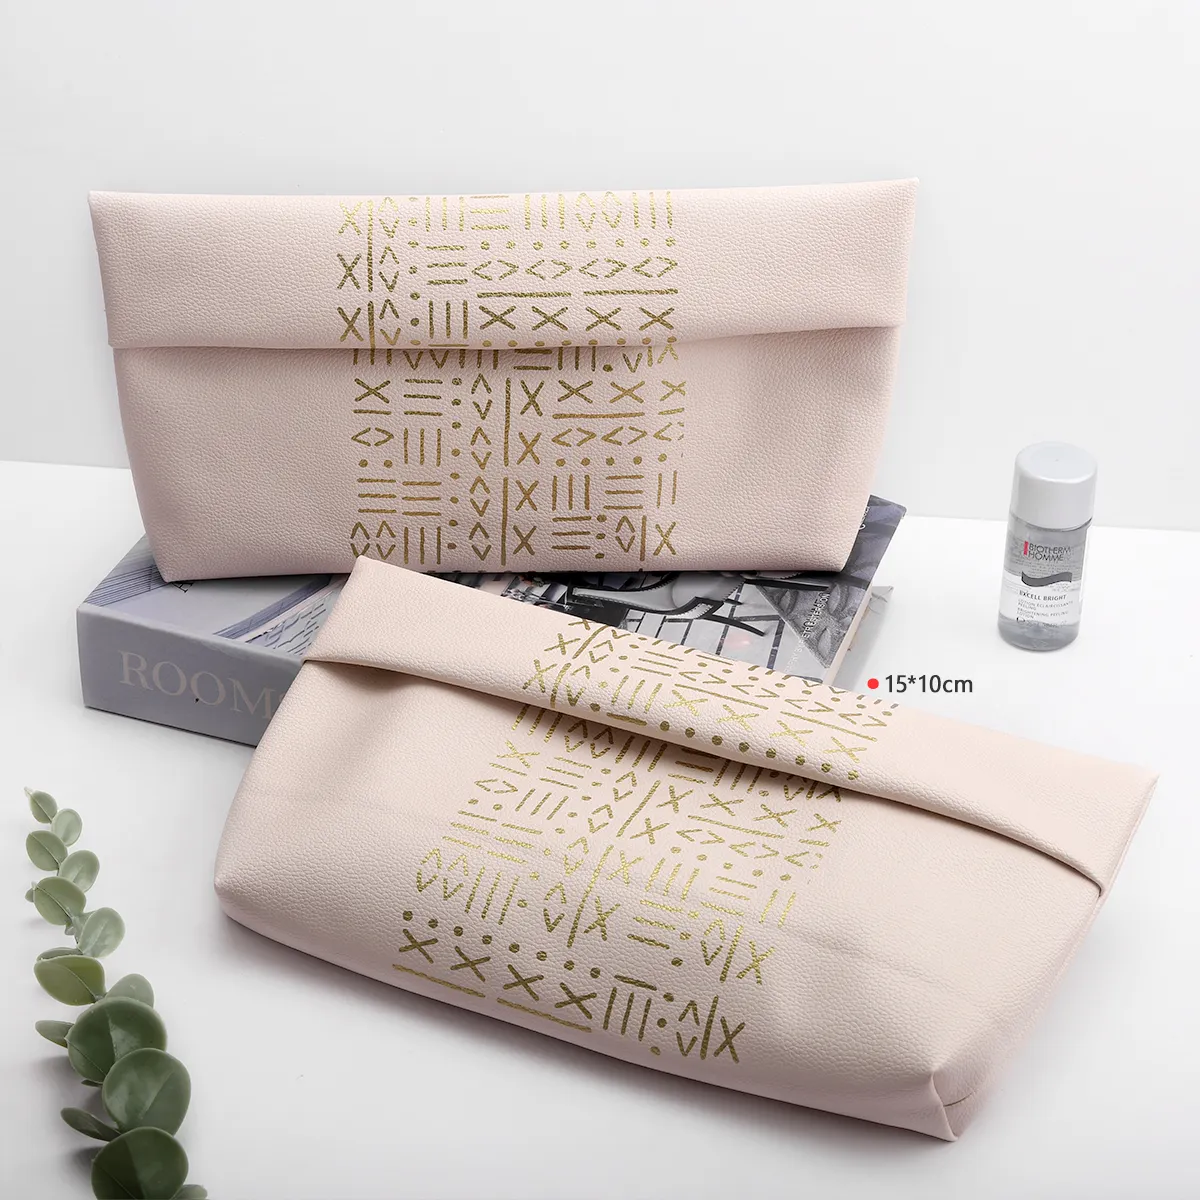 Luxe personnalisé étanche cosmétique poussière enveloppe pochette en cuir avec logo écologique cadeau bijoux sac